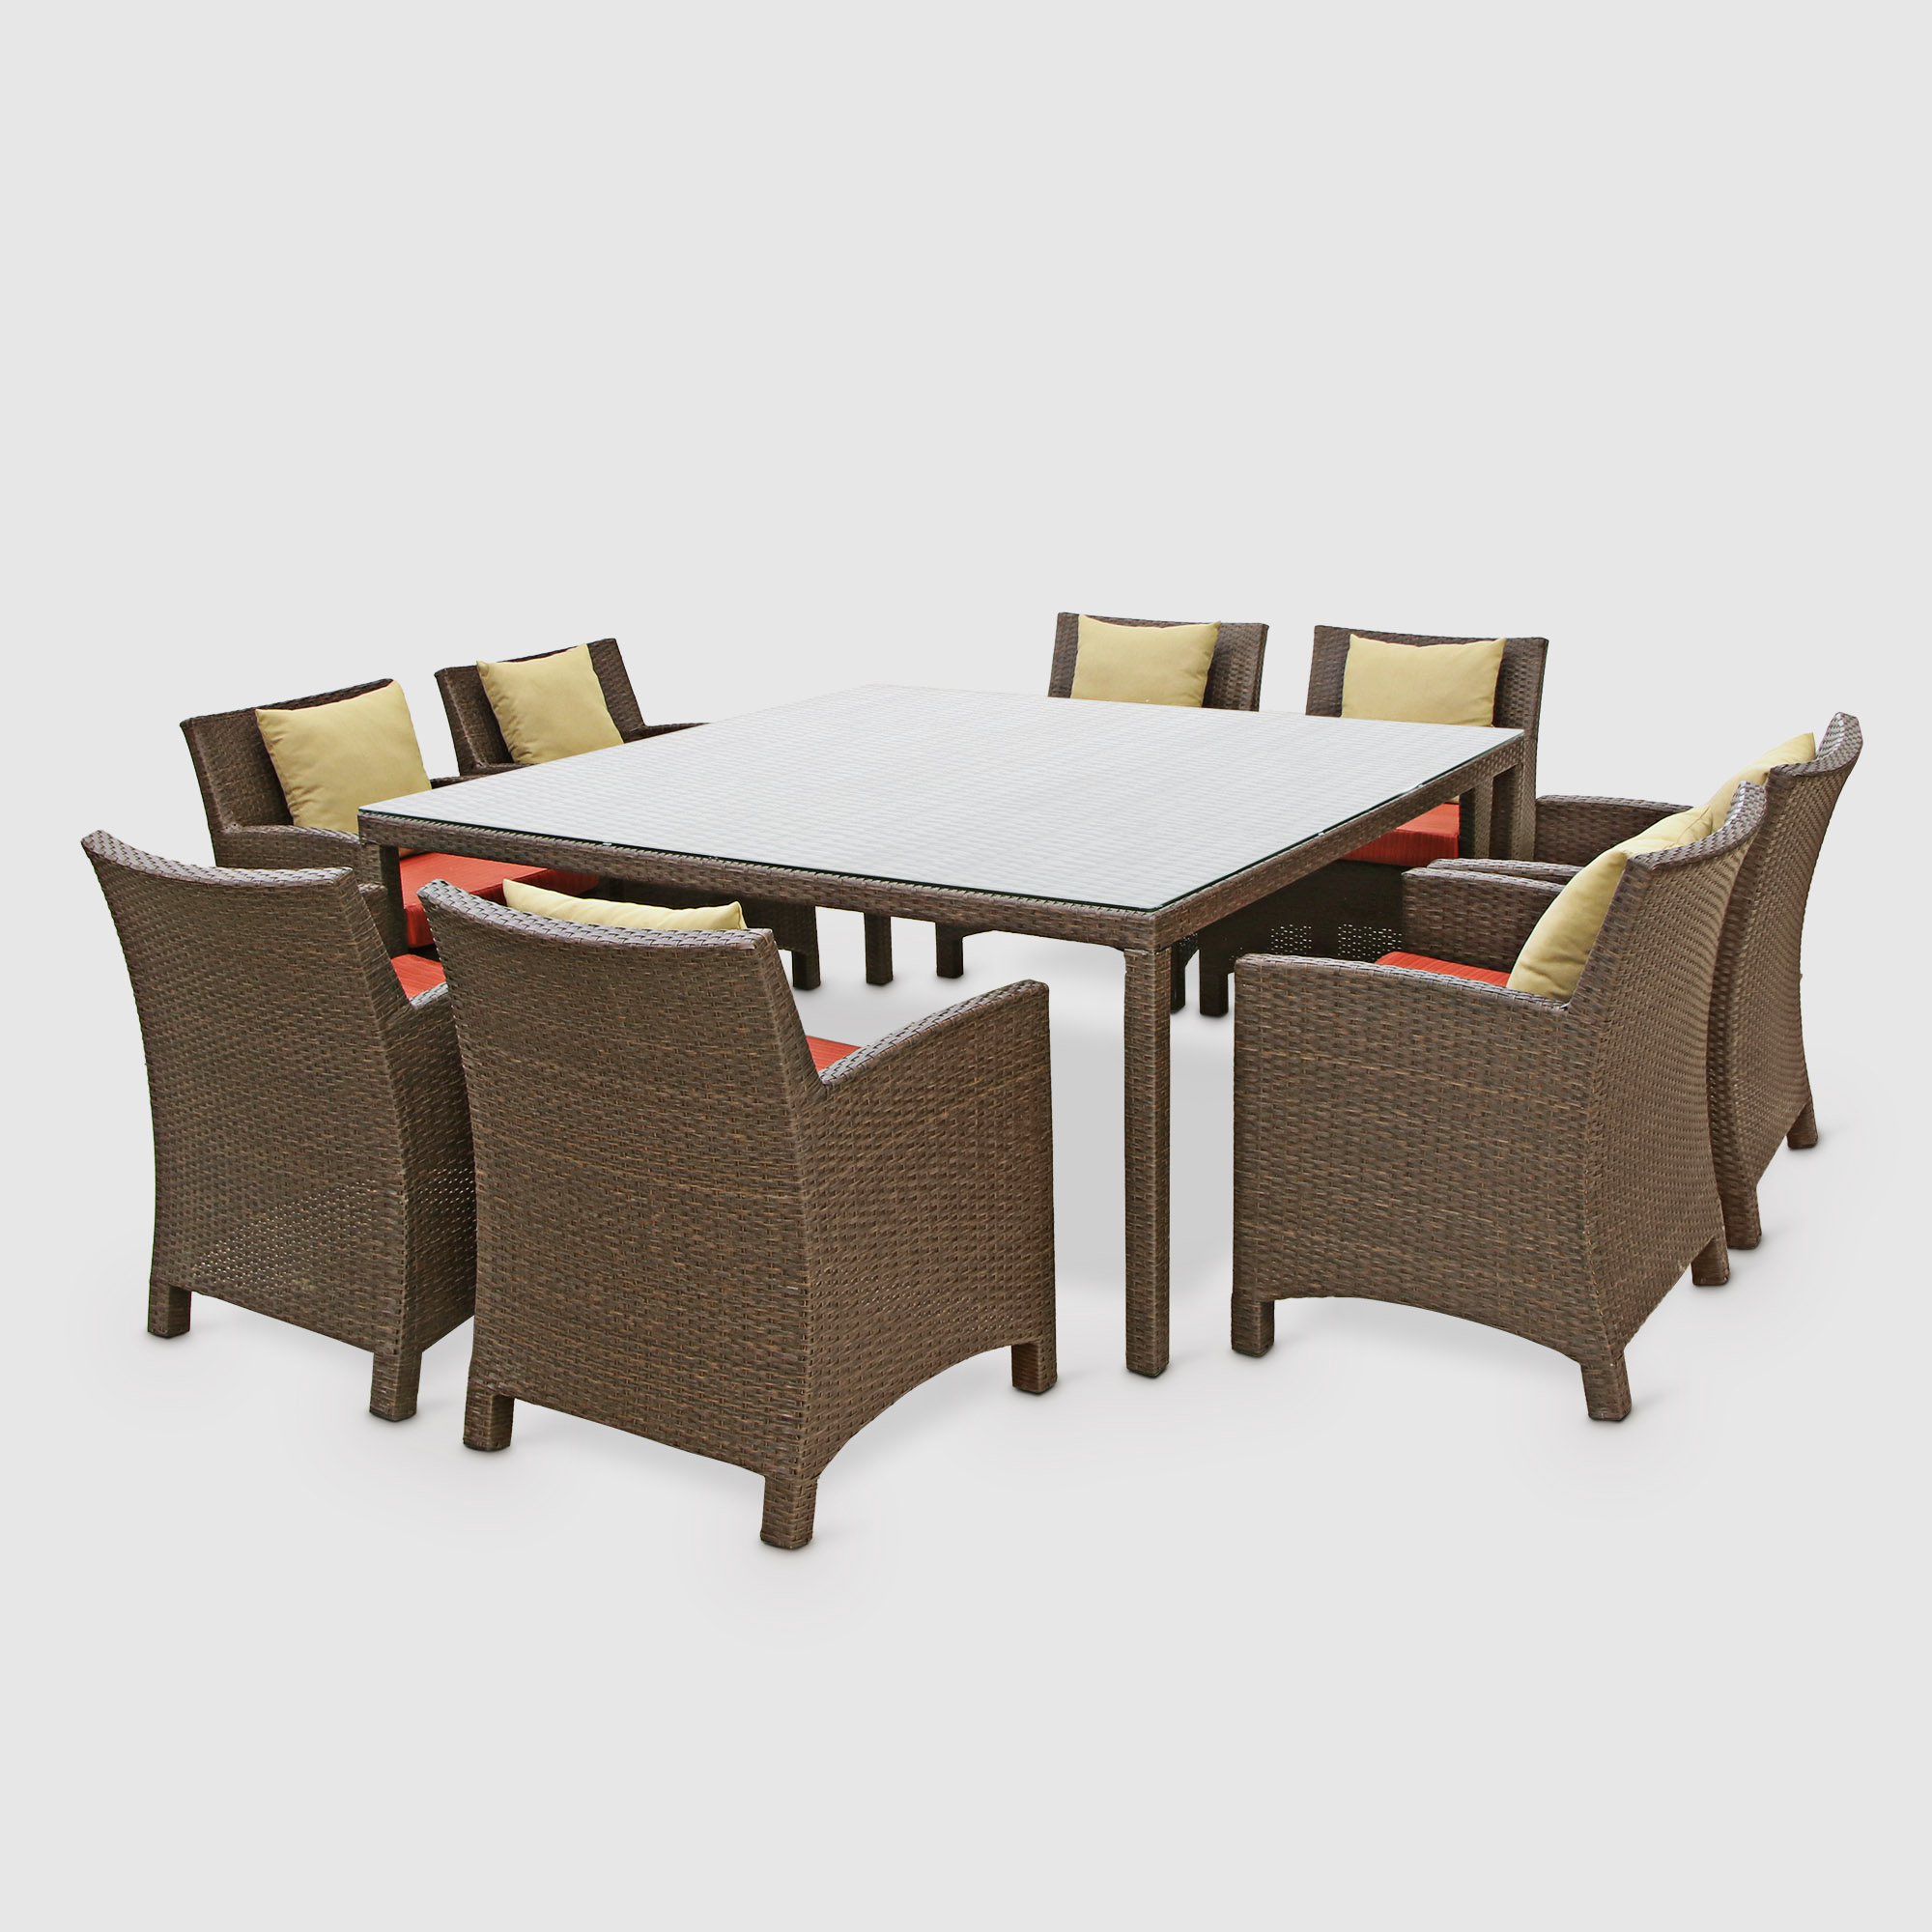 Комплект мебели Obt 9 предметов красный комплект садовой мебели mandella karizma коричневый из 3 предметов